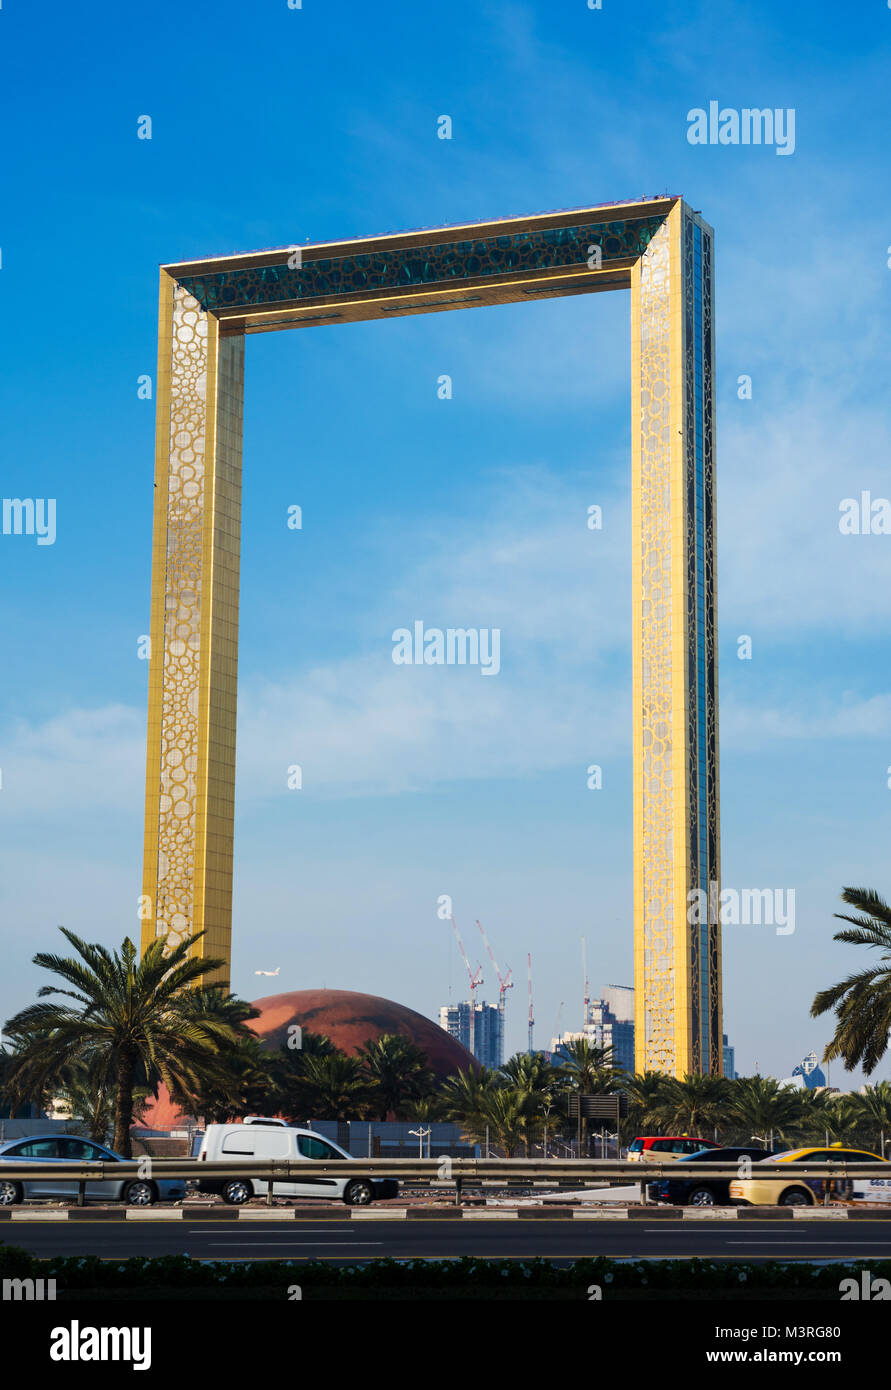 Dubai, Emirati Arabi Uniti, 11 Febbraio 2018: Dubai costruzione del telaio contro il cielo blu. Le misure del telaio alta 150 metri e 93 metri di larghezza e il suo n Foto Stock